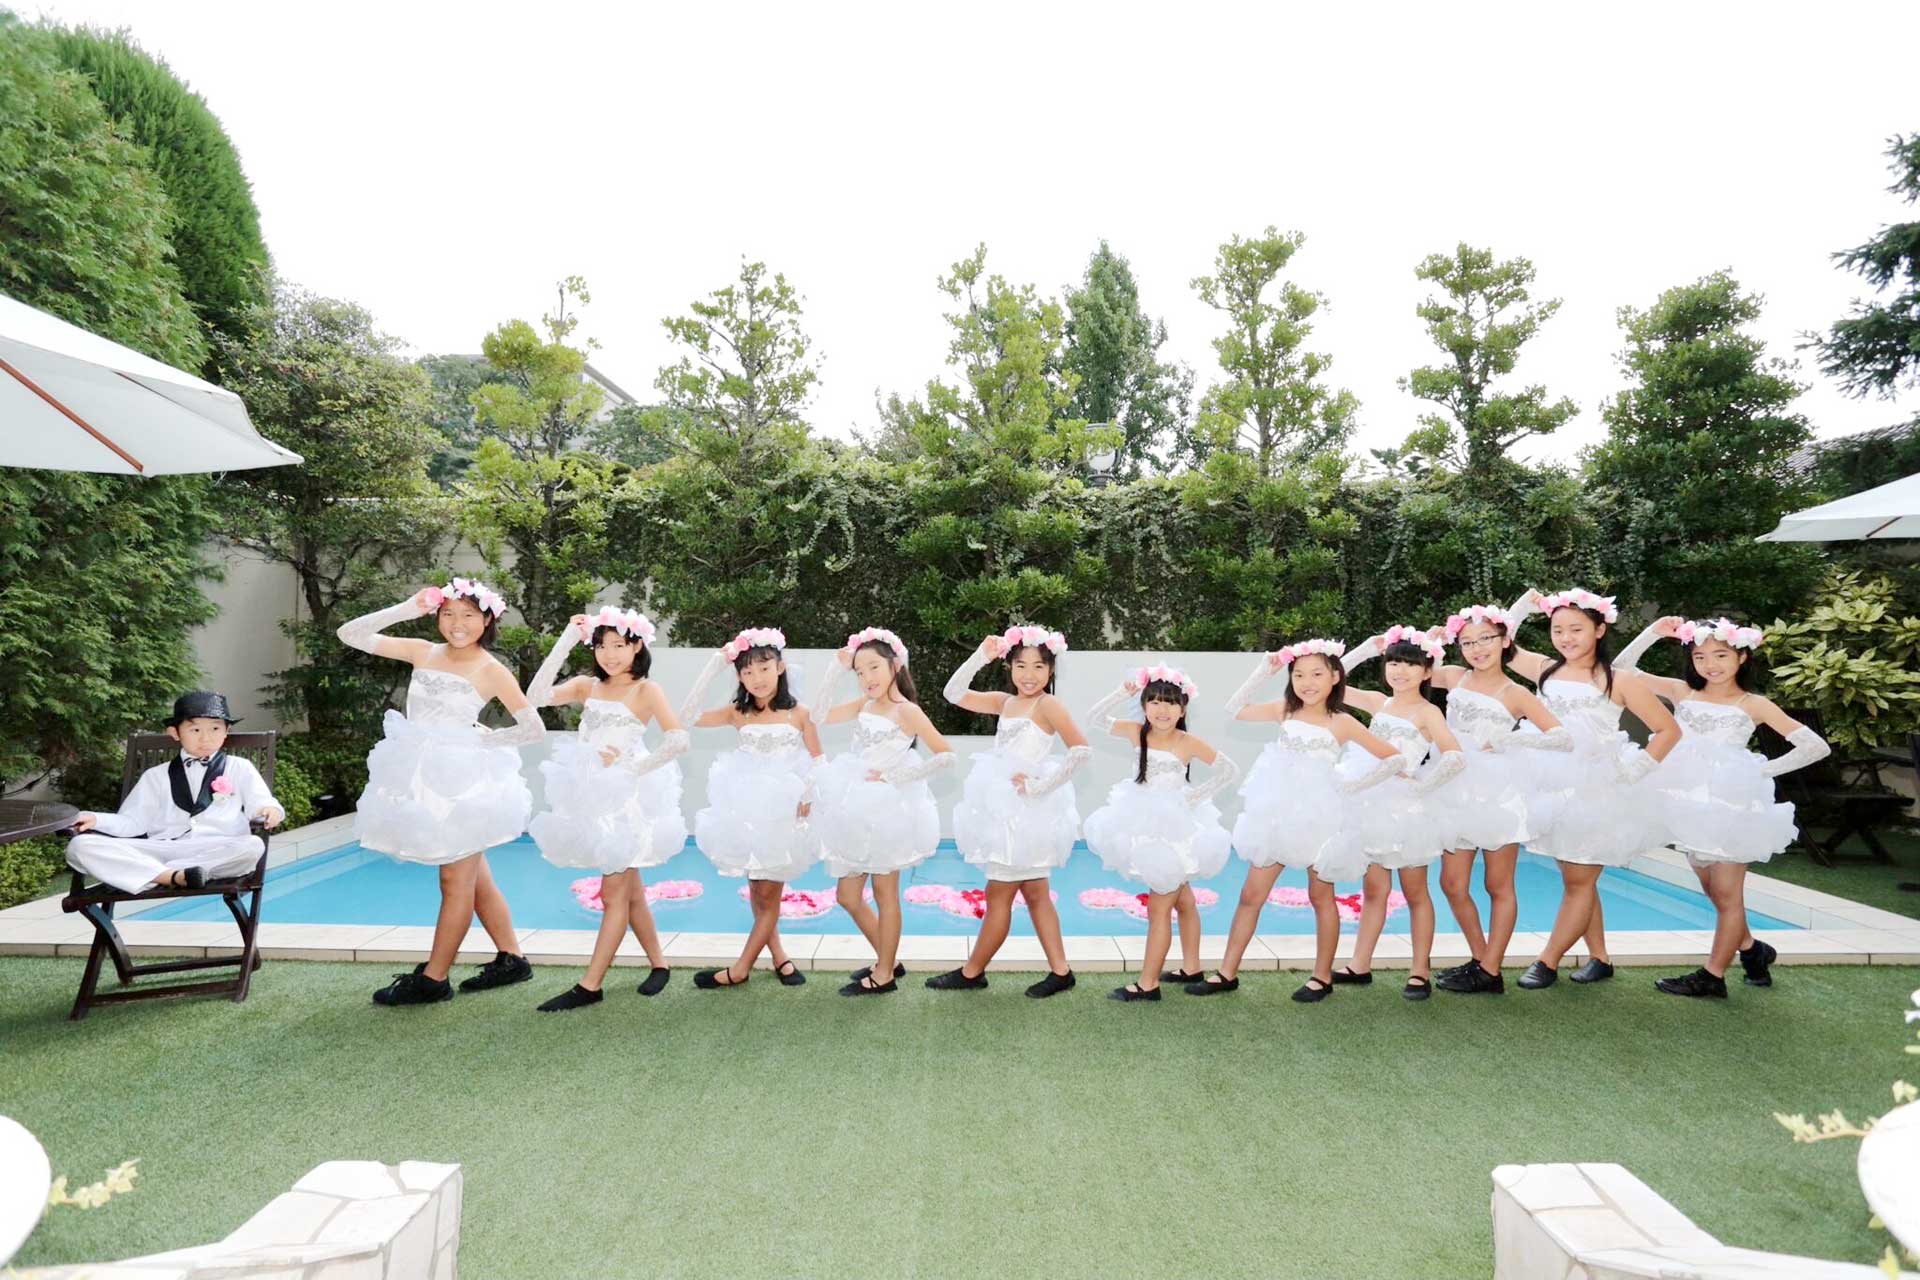 愛知県名古屋市のダンススクールワイズステップイメージ2